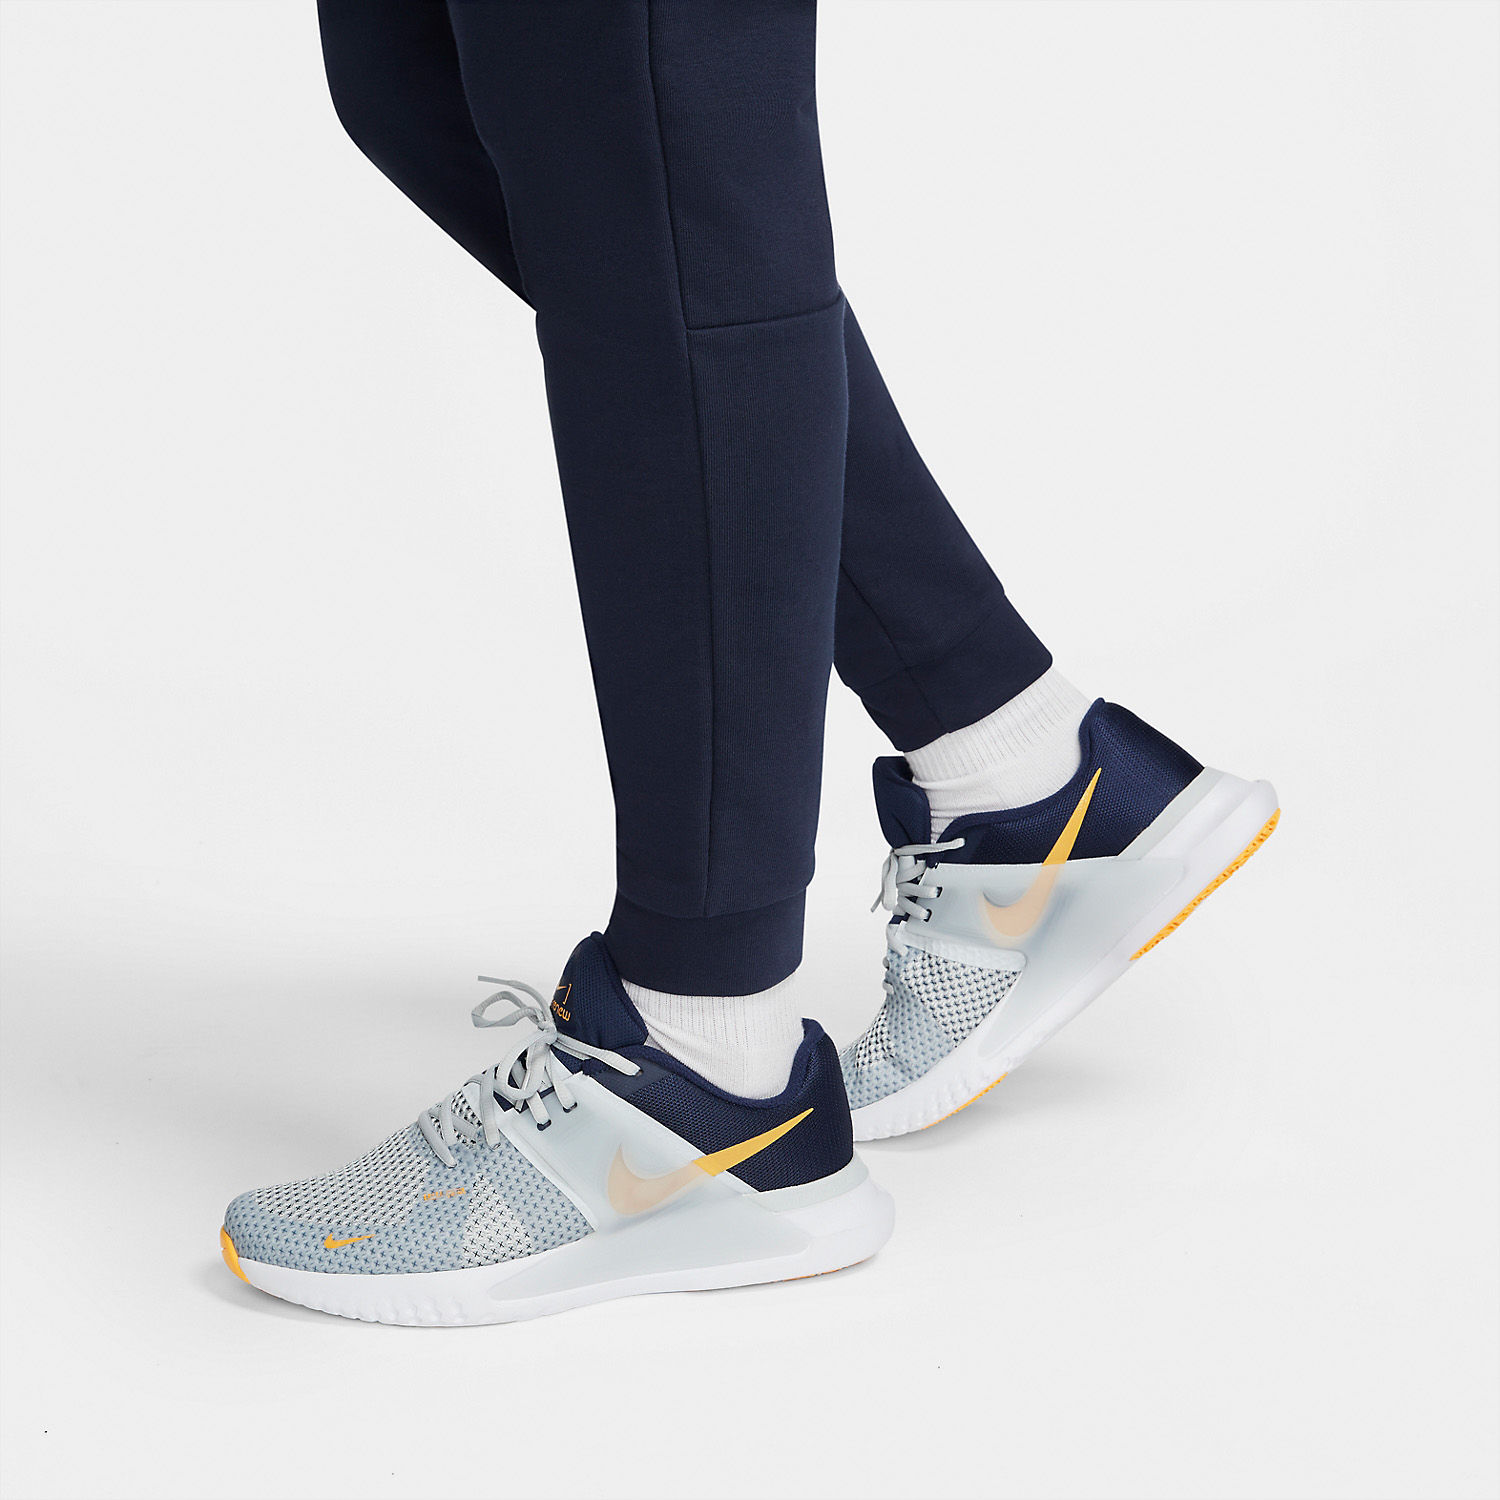 Nike Dri-FIT Pants - Obsidian/White